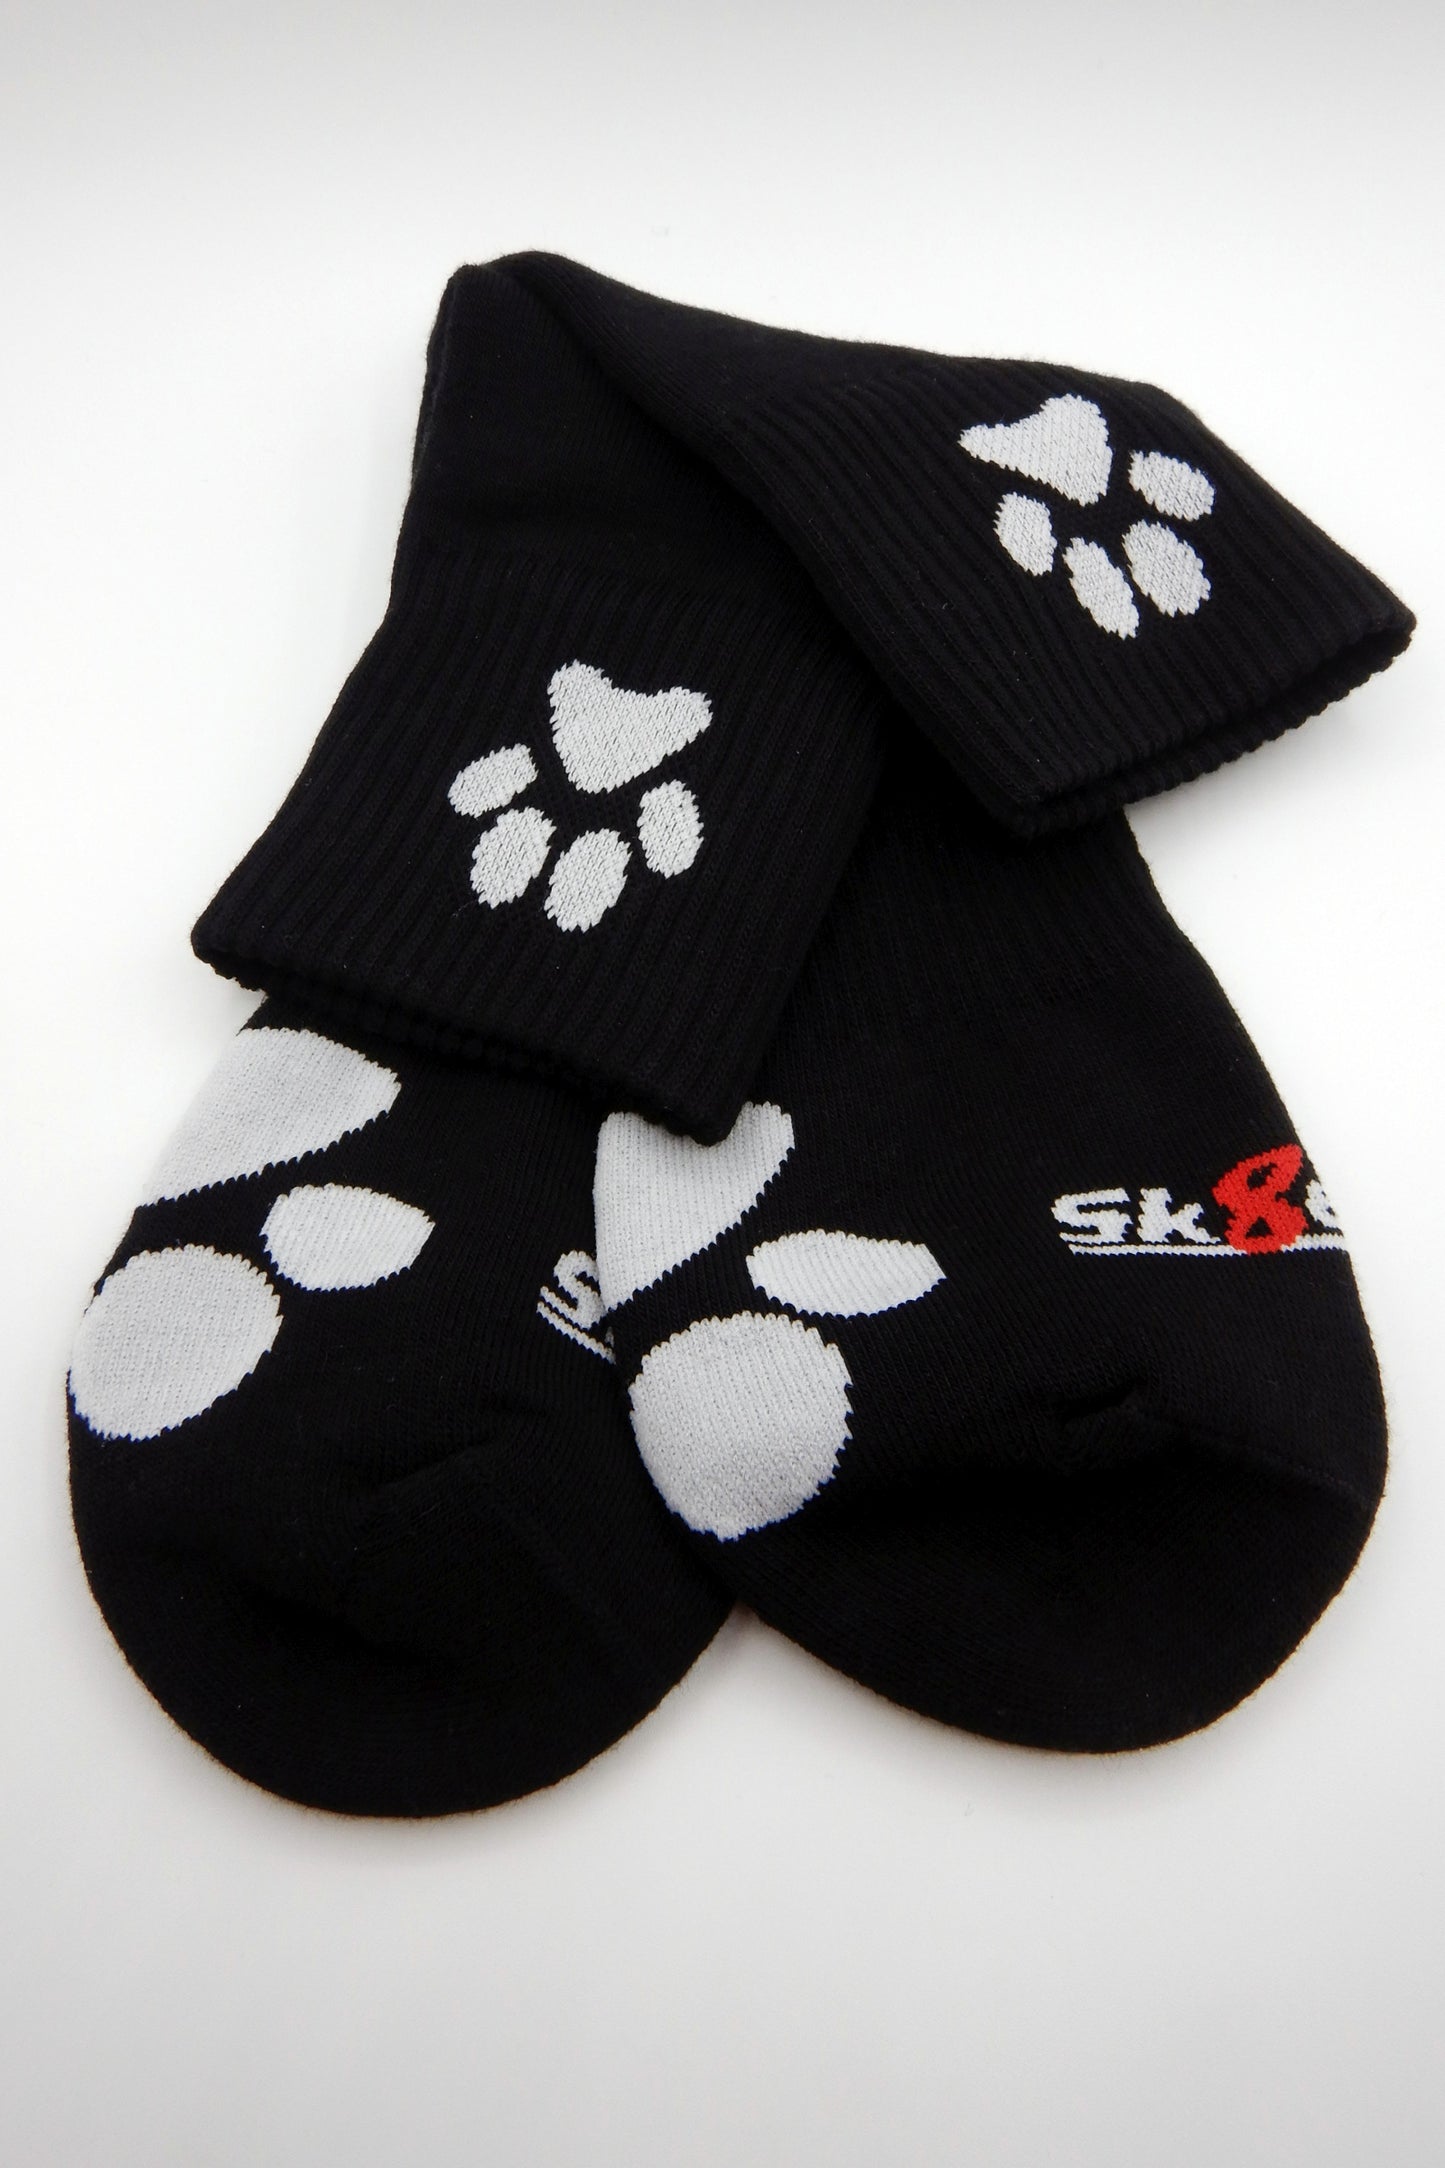 Sk8erboy® PUPPY Short Crew Socks black